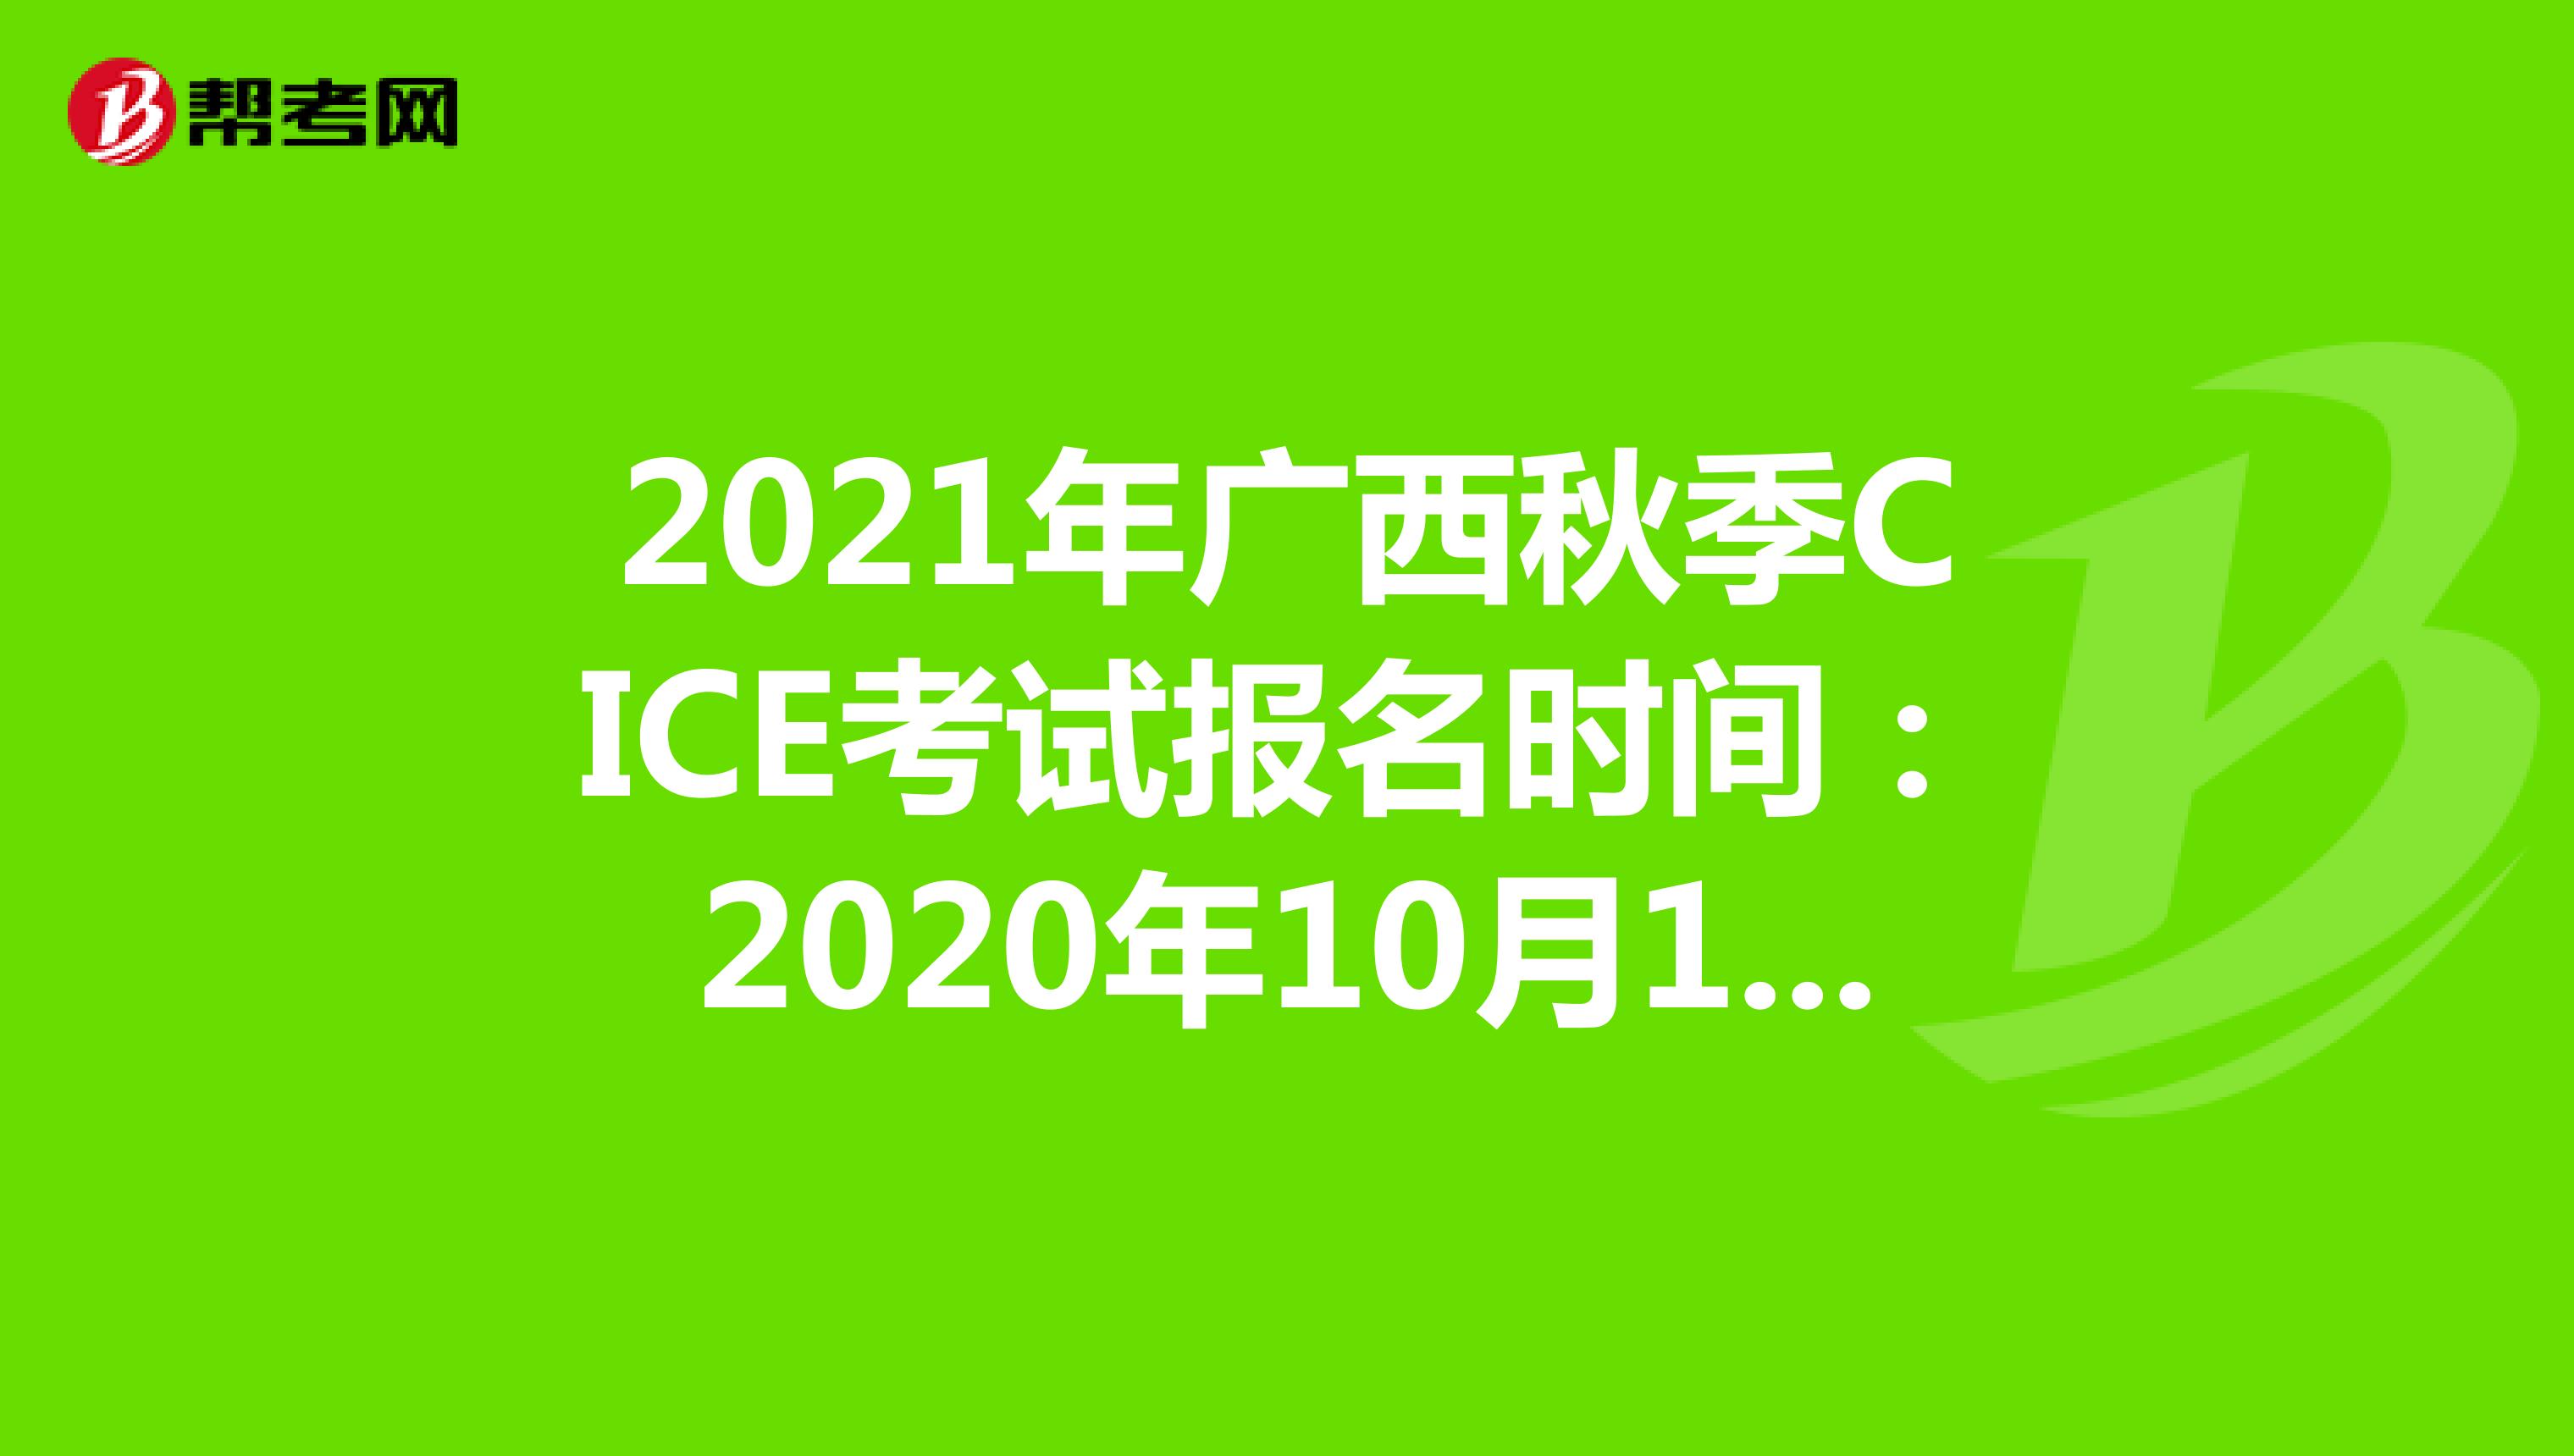 2021年广西秋季CICE考试报名时间：2020年10月19日-2021年8月31日